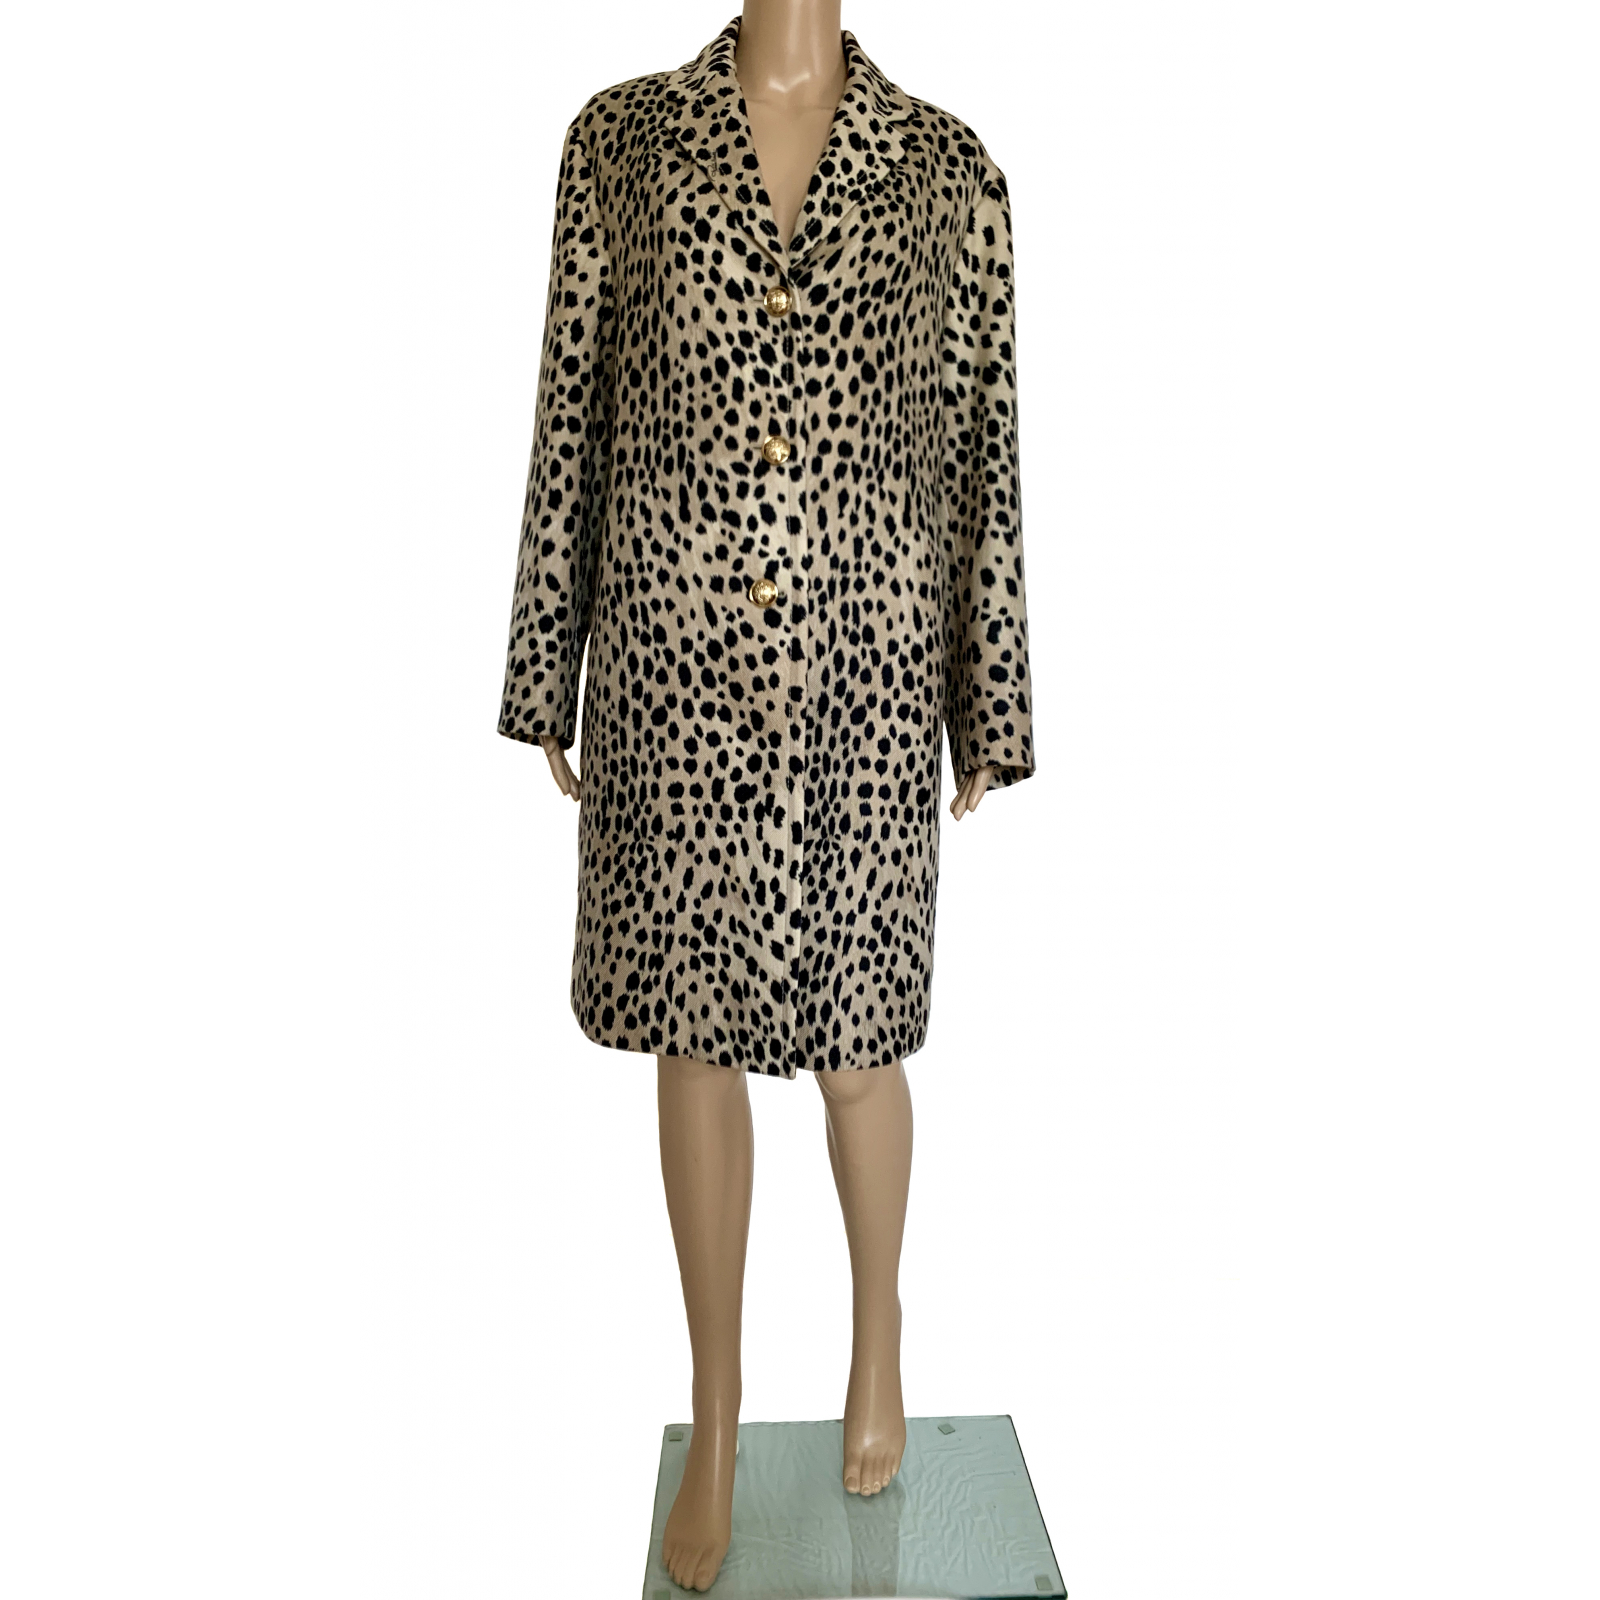 Wełniany płaszcz we wzór leoparda